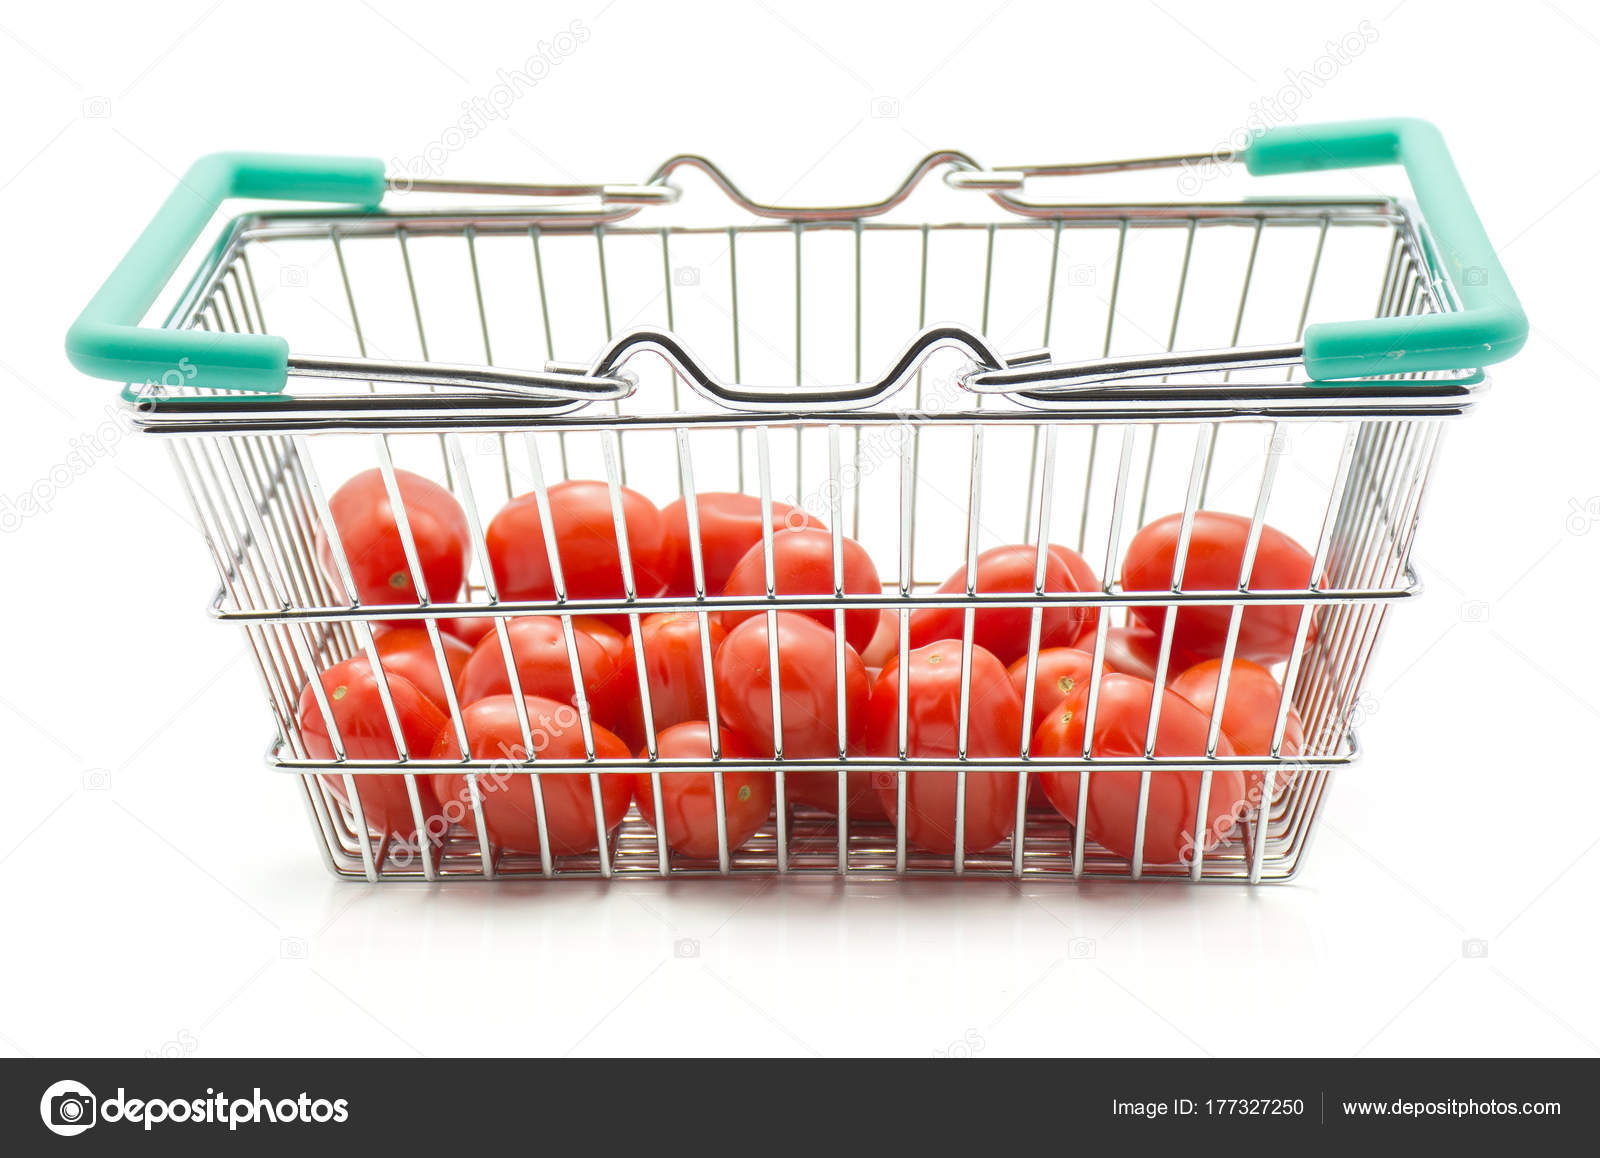 Kirschtomaten Bobulienka Einem Einkaufskorb Isoliert Auf Weißem Hintergrund  - Stockfotografie: lizenzfreie Fotos © PIXbank 177327250